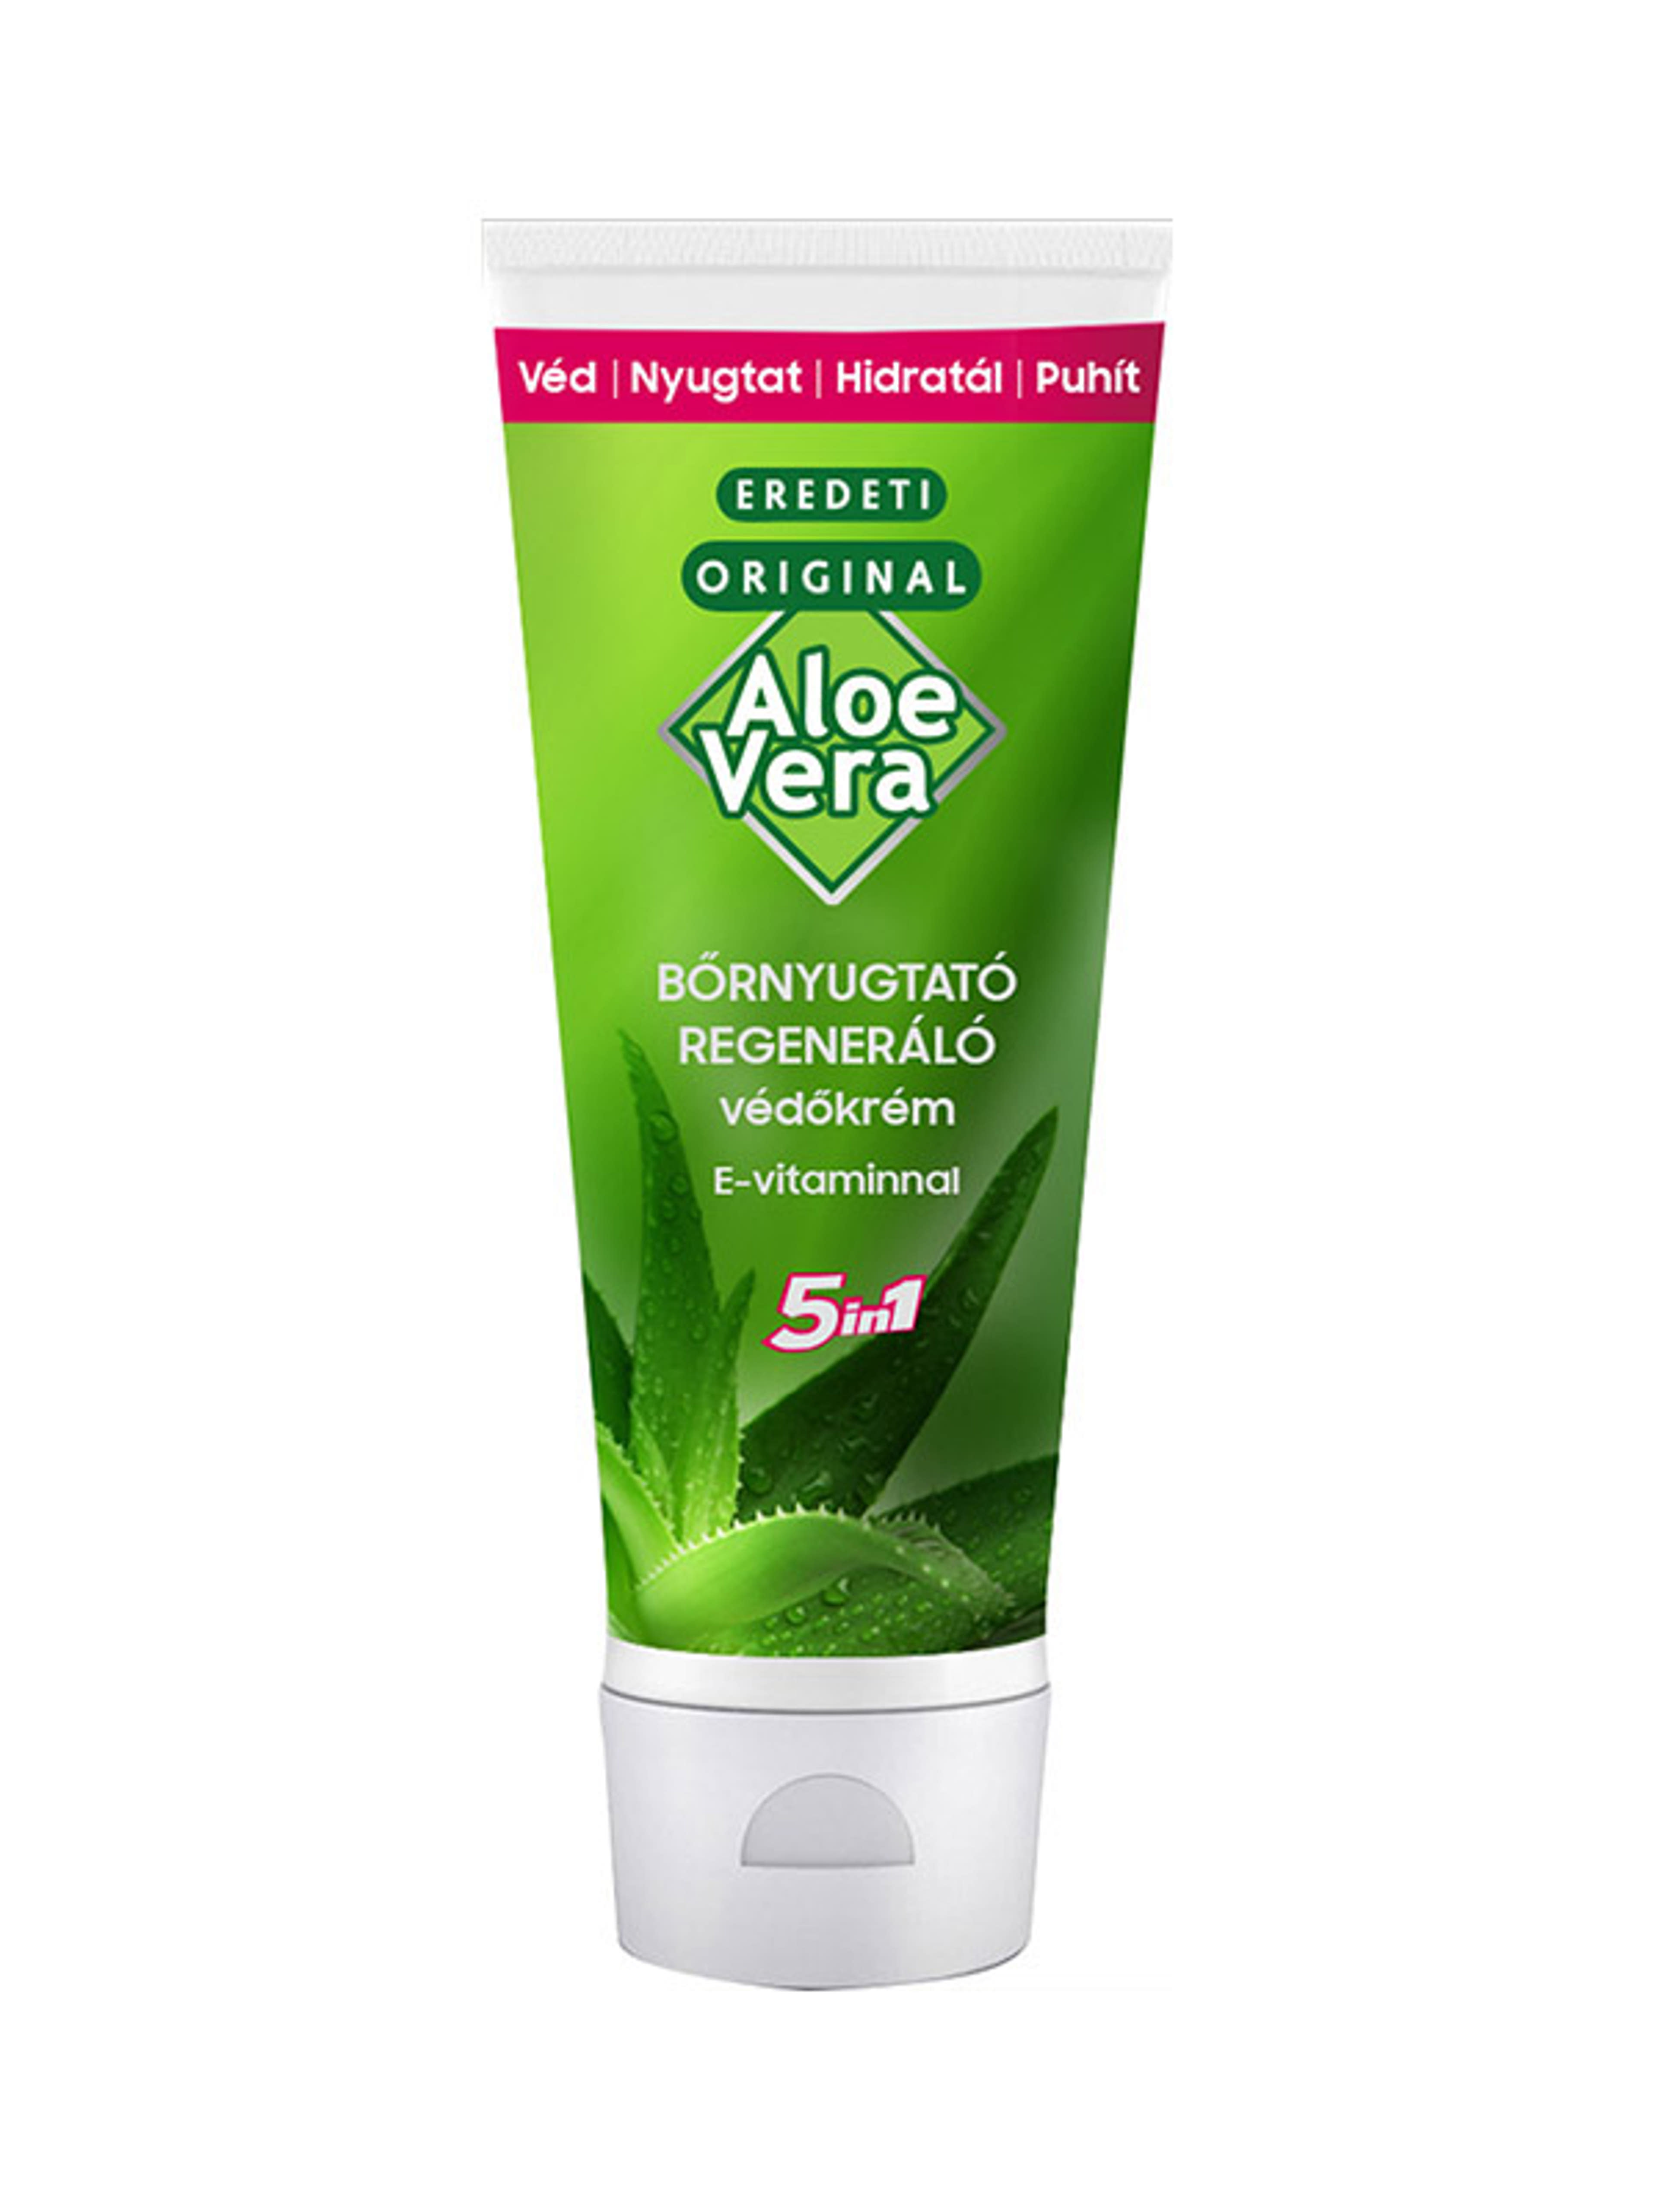 Eredeti Aloe Vera bőrnyugtató védőkrém 5 in 1 - 100 ml